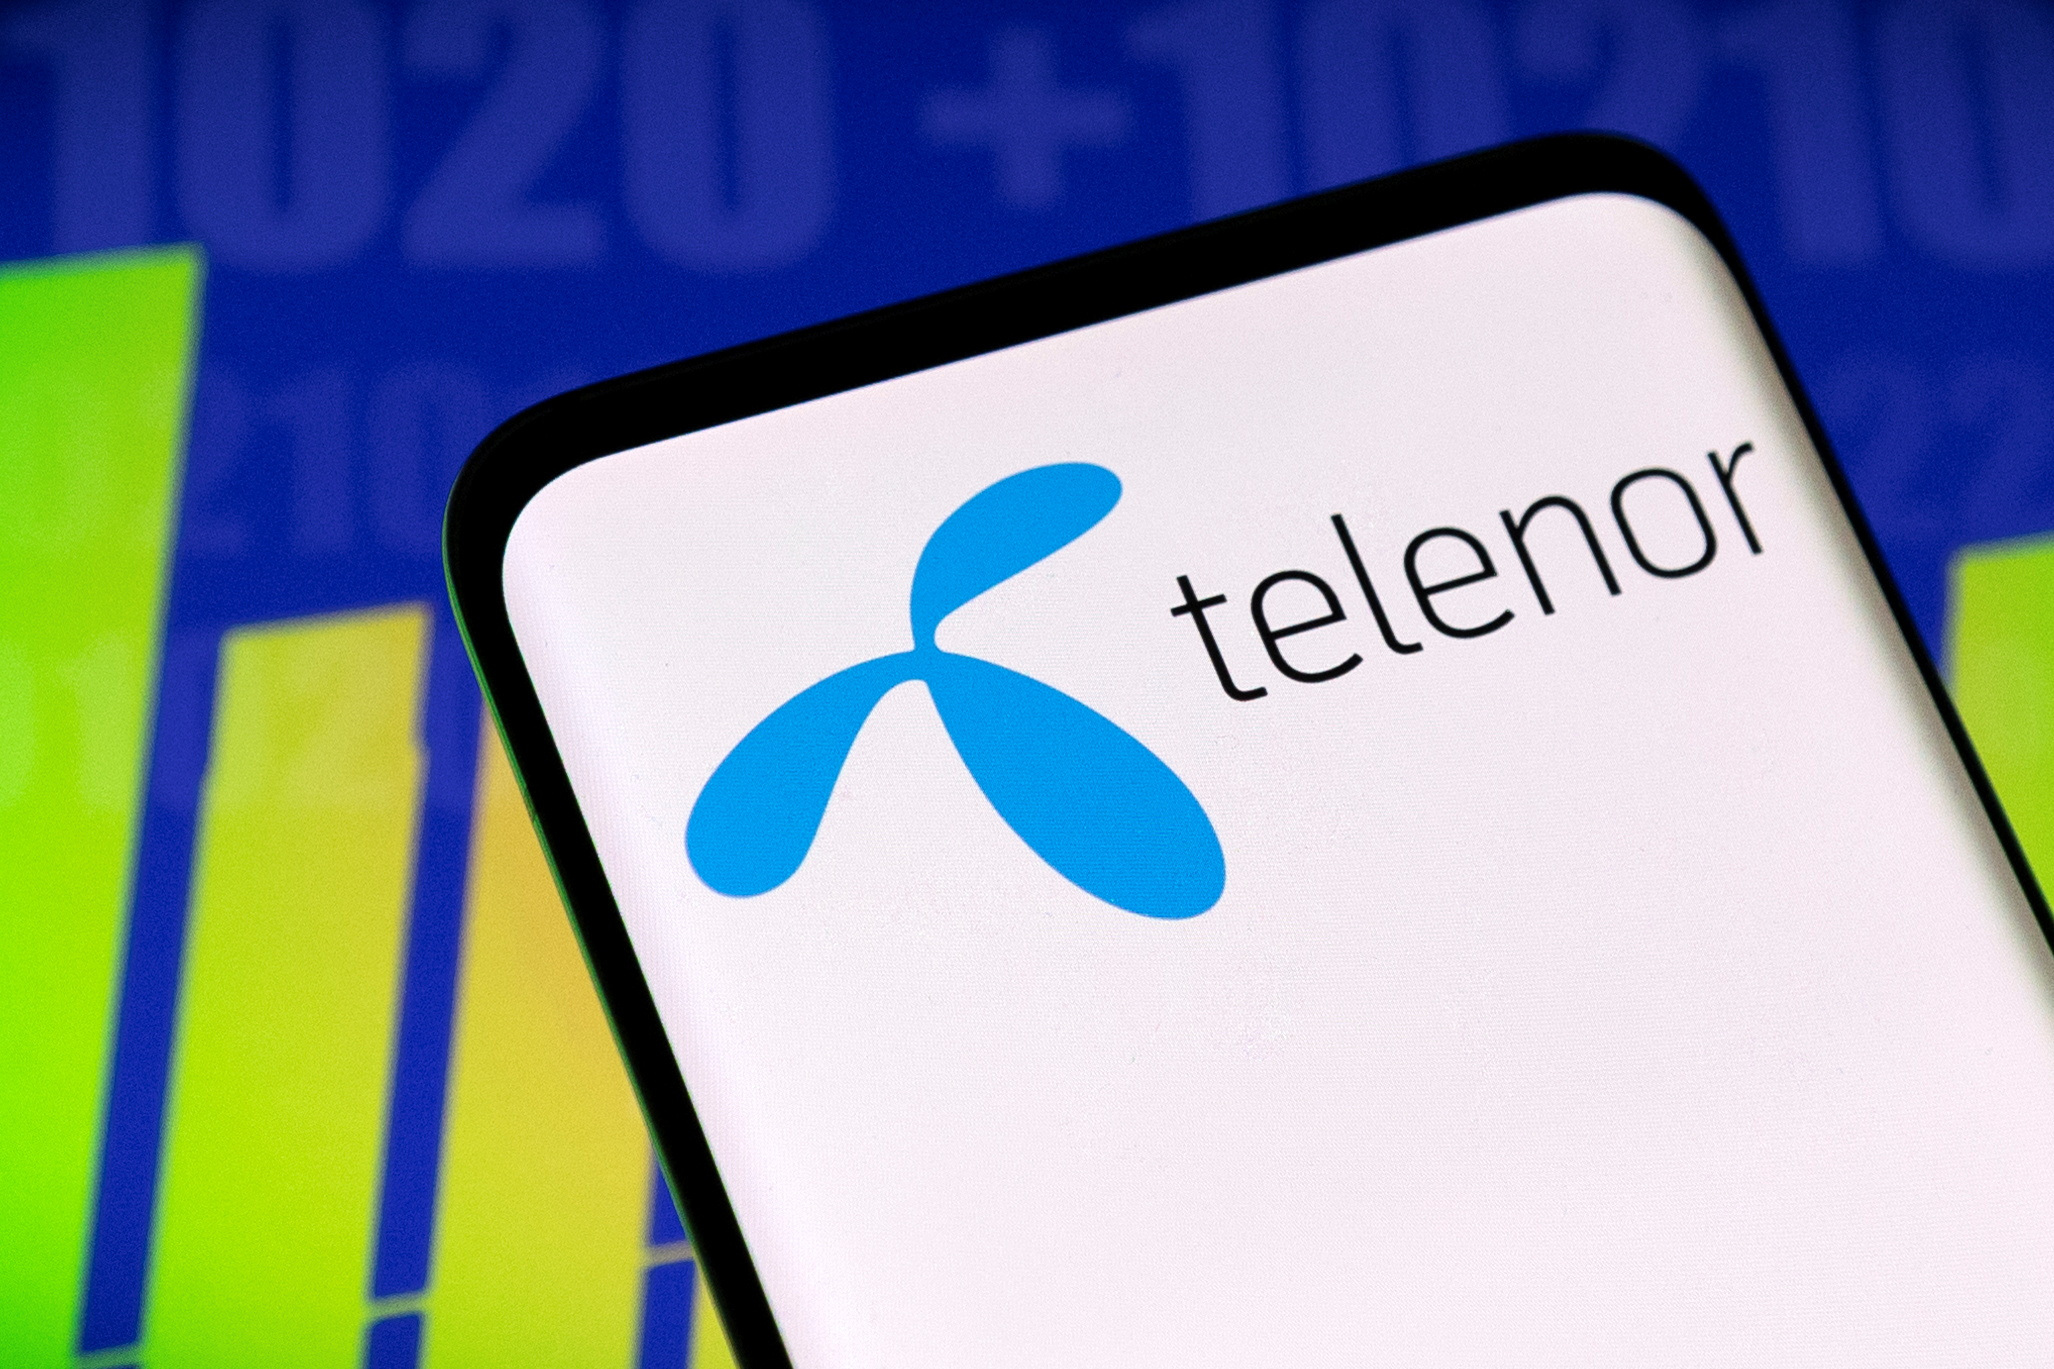 Illustration shows Telenor logo